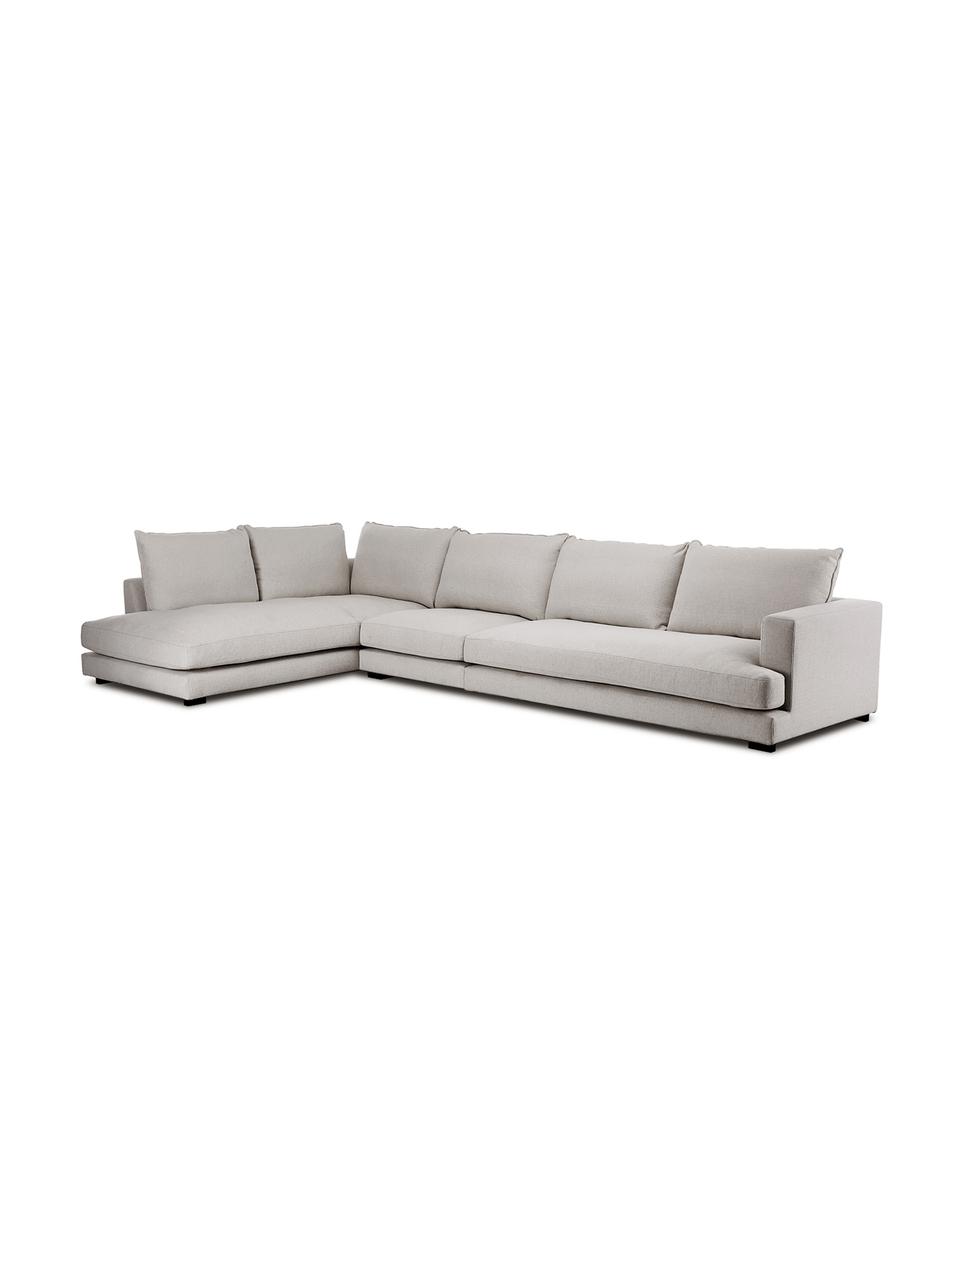 Canapé d'angle XXL gris-beige Tribeca, Tissu gris-beige, larg. 405 x prof. 228 cm, méridienne à gauche